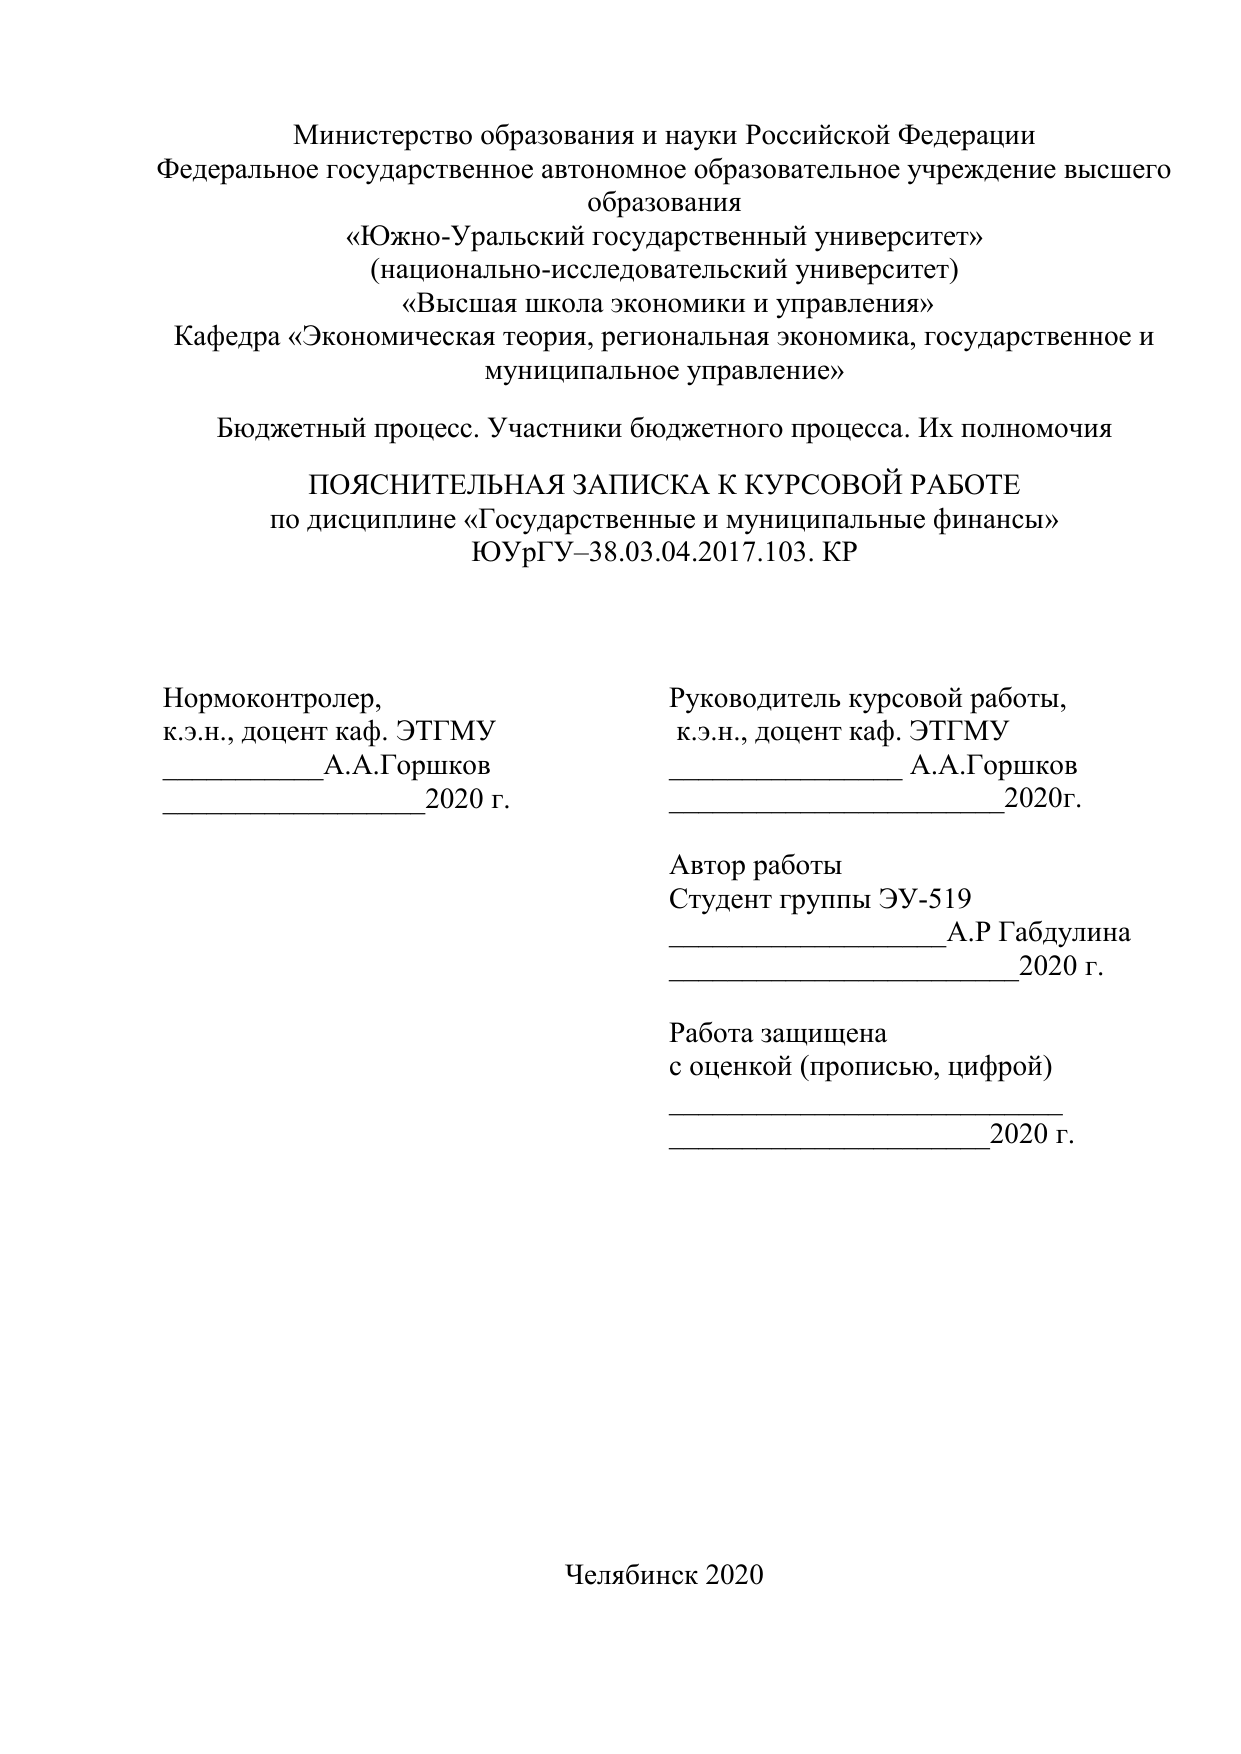 Курсовая работа: Бюджетный процесс в Российской Федерации 2